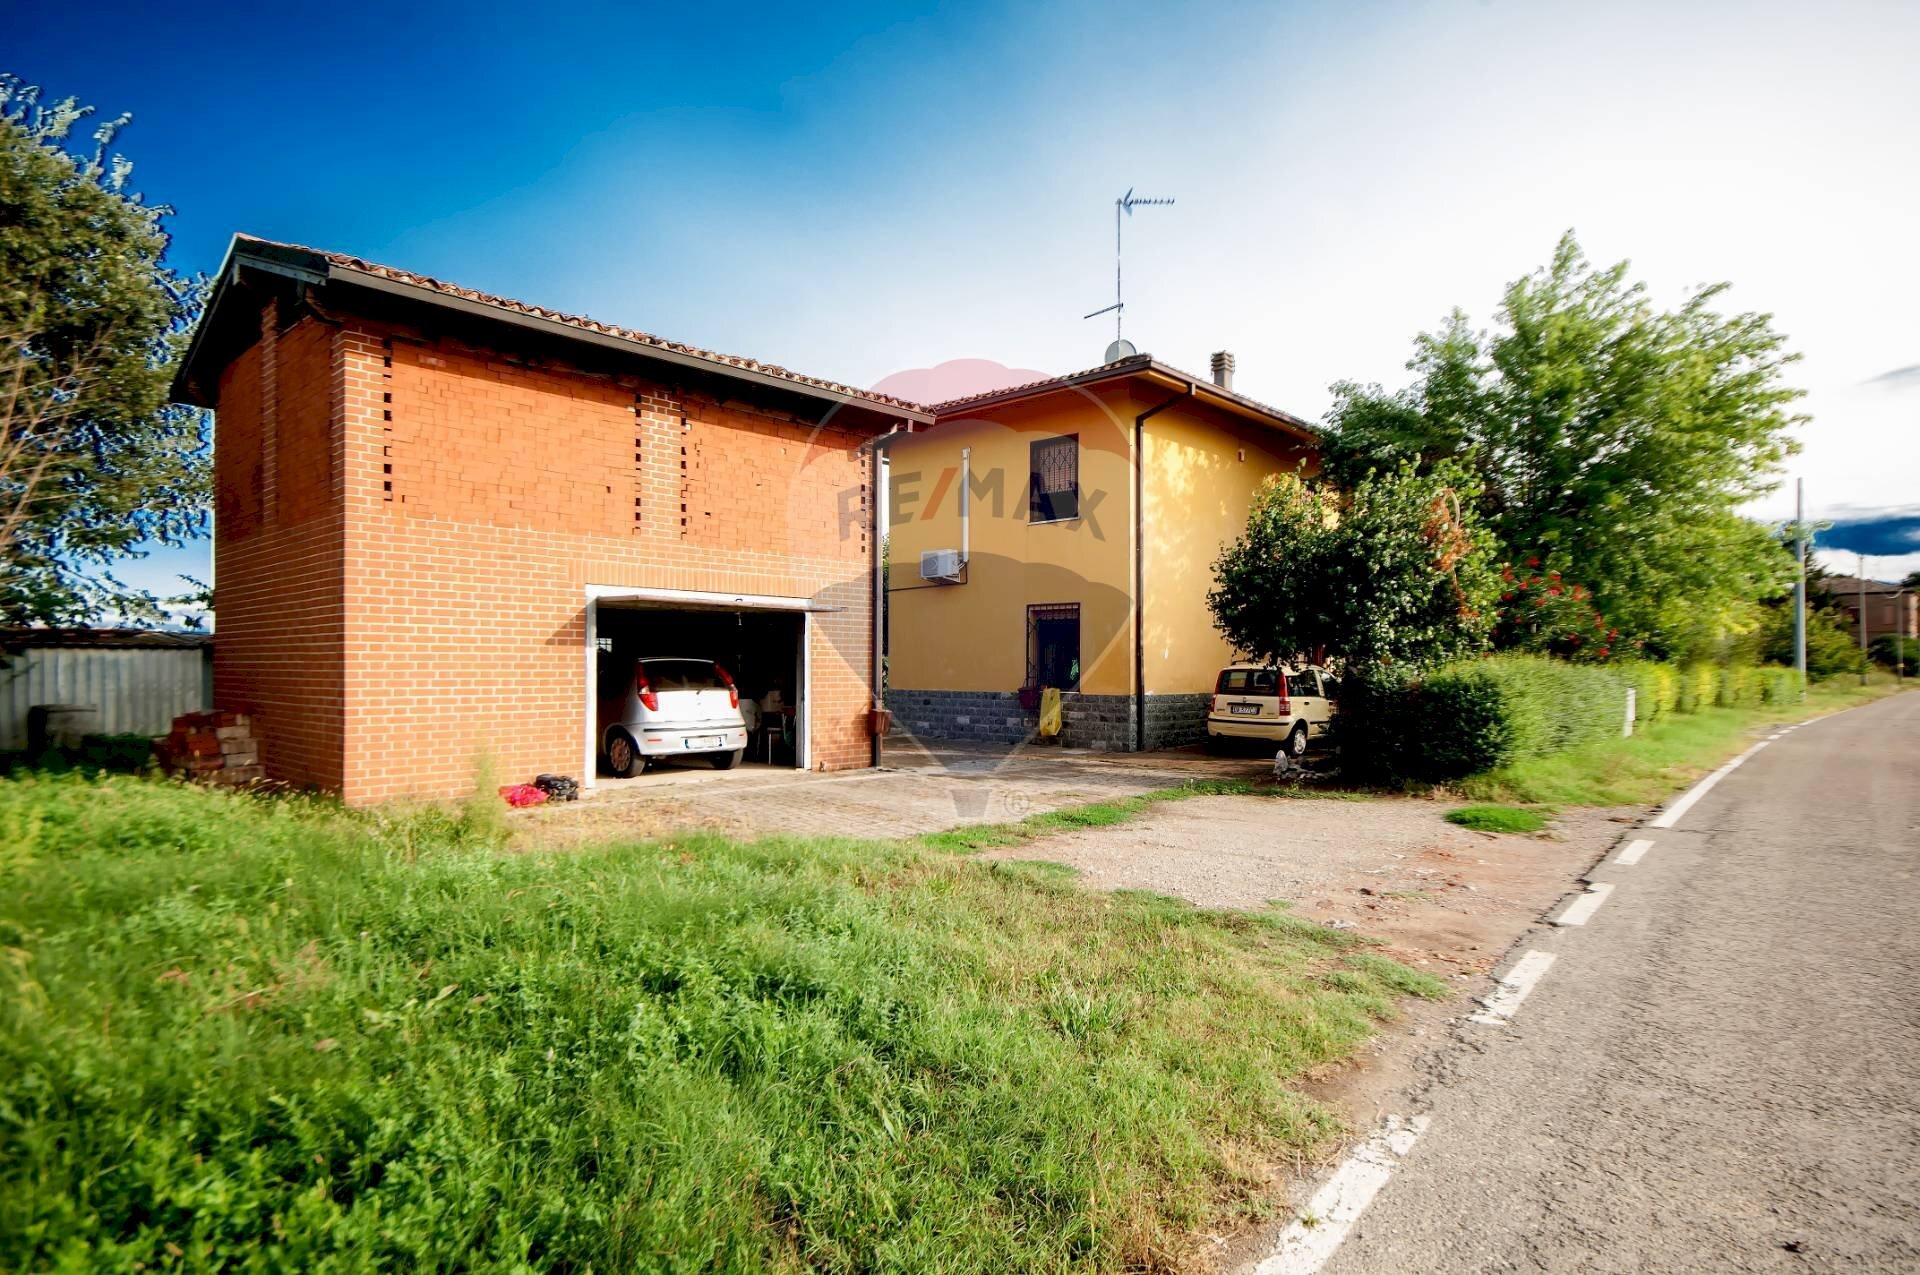 Vendita Casa indipendente Via Martignone, 3
Crespellano, Valsamoggia